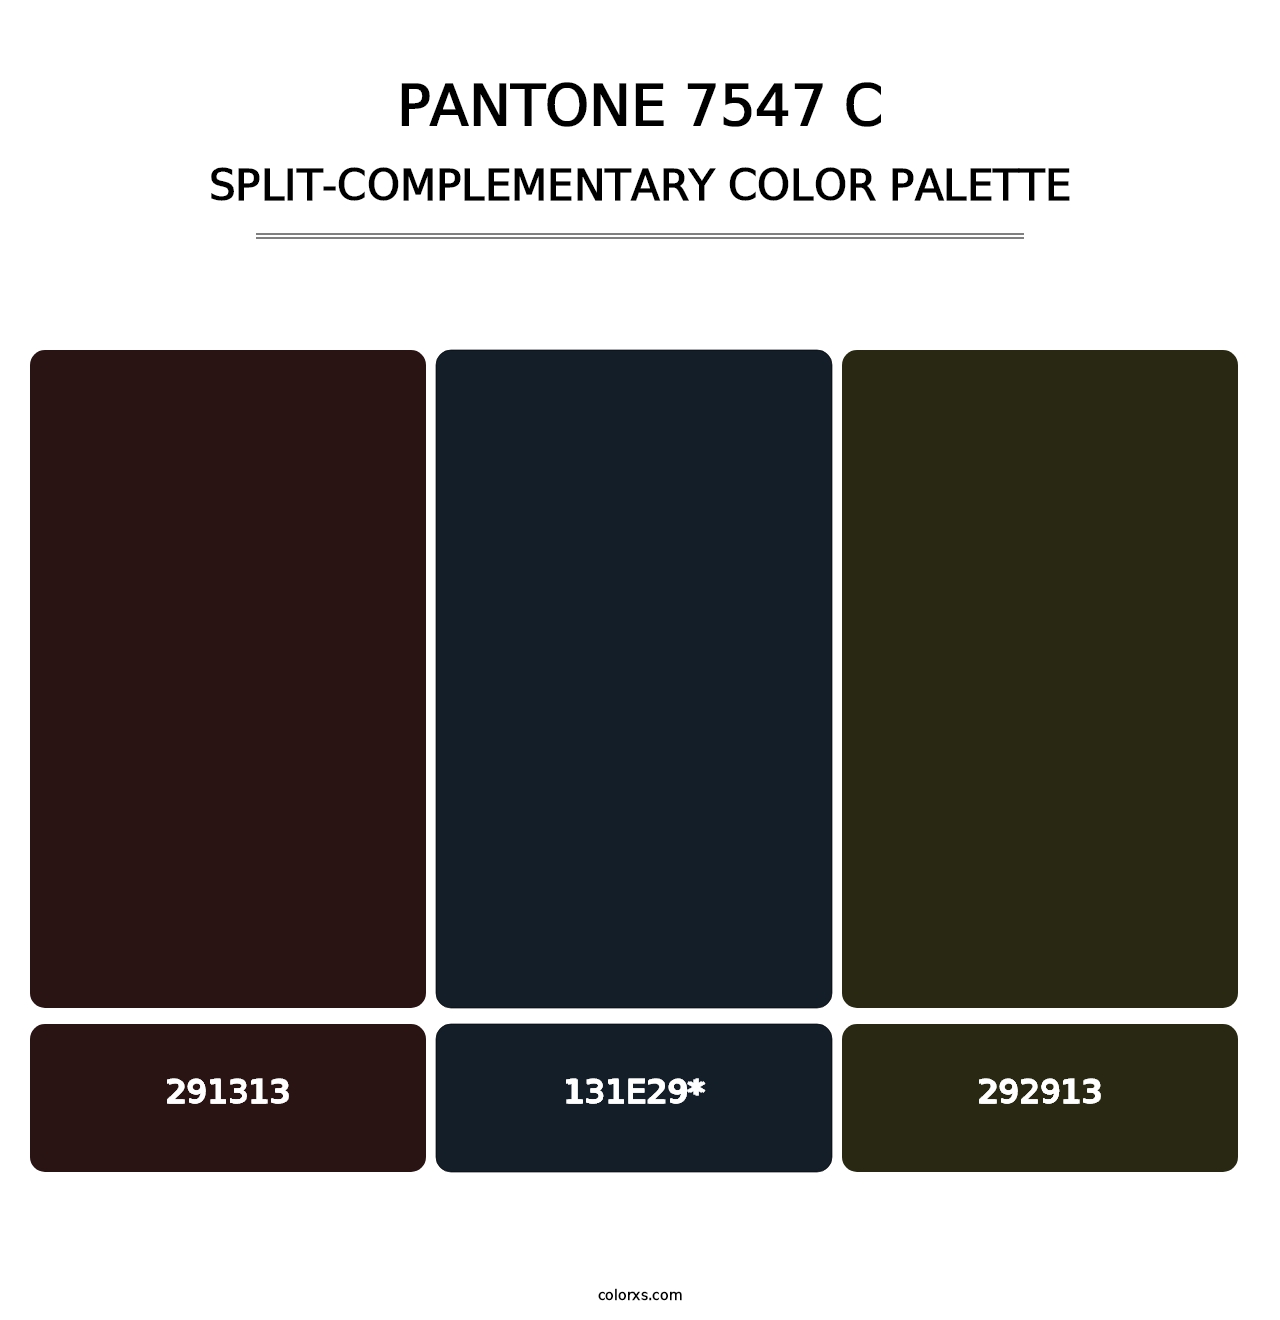 PANTONE 7547 C - Split-Complementary Color Palette